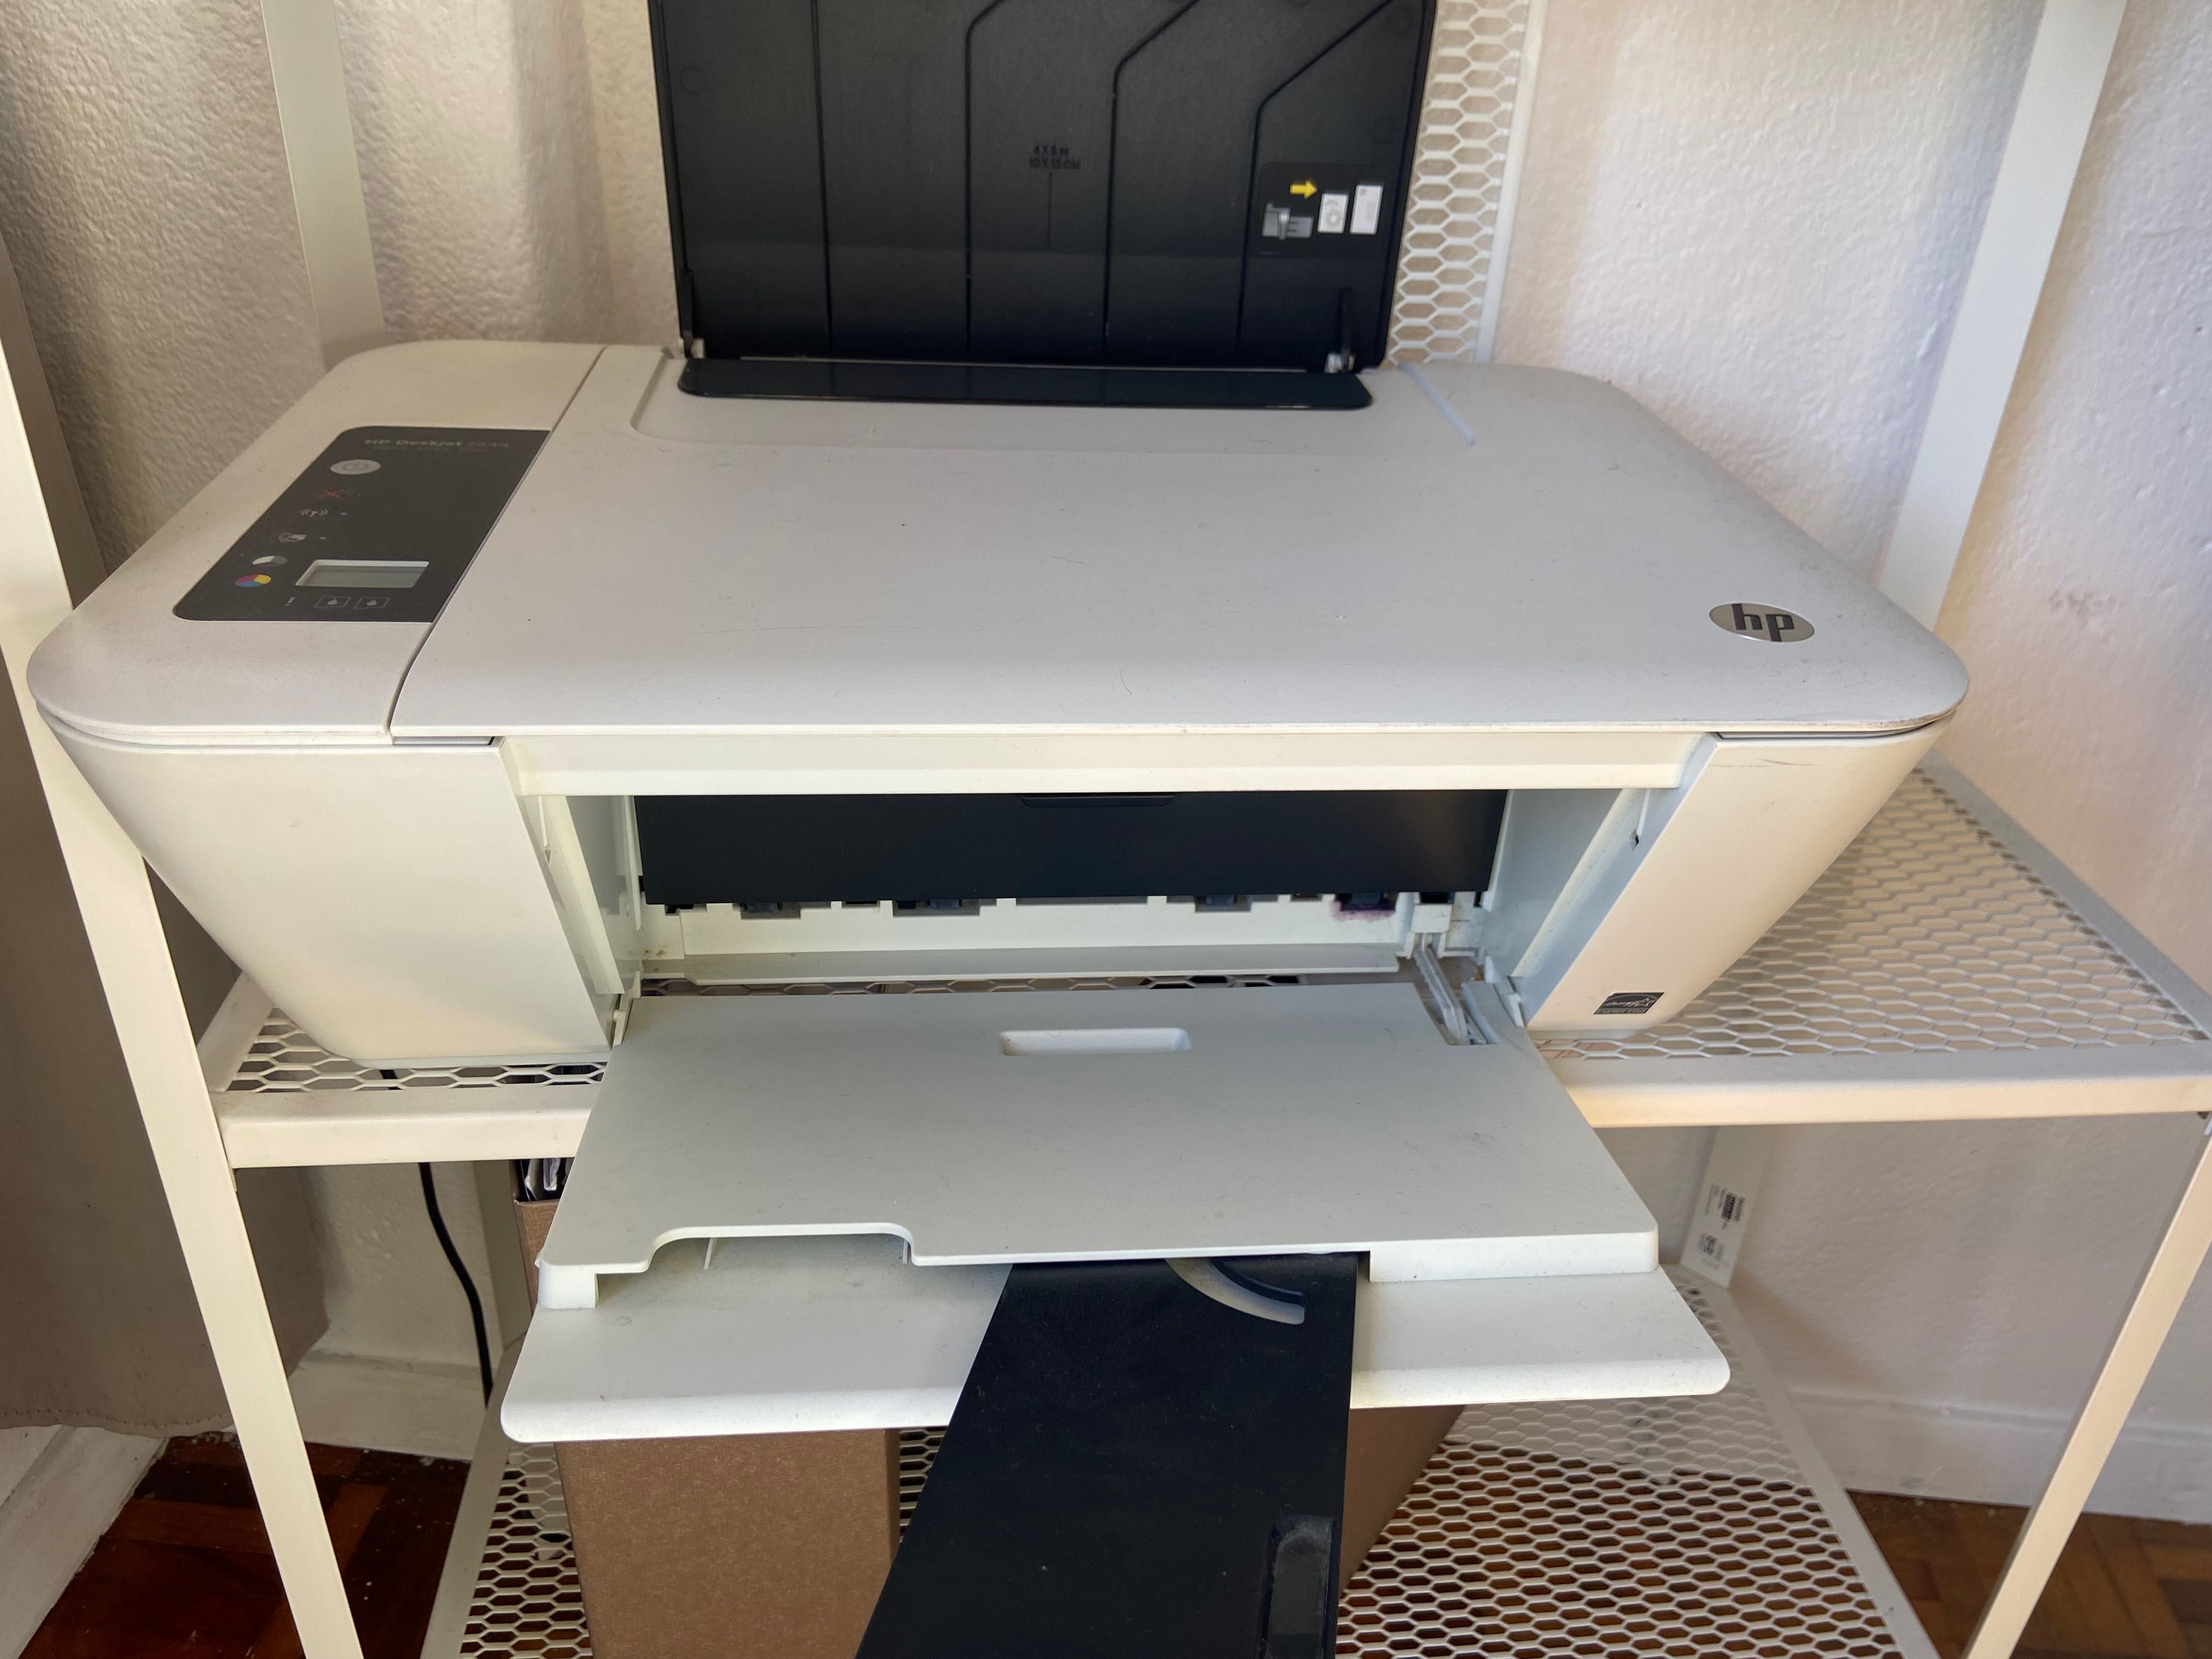 Impressora HP deskjet 2544